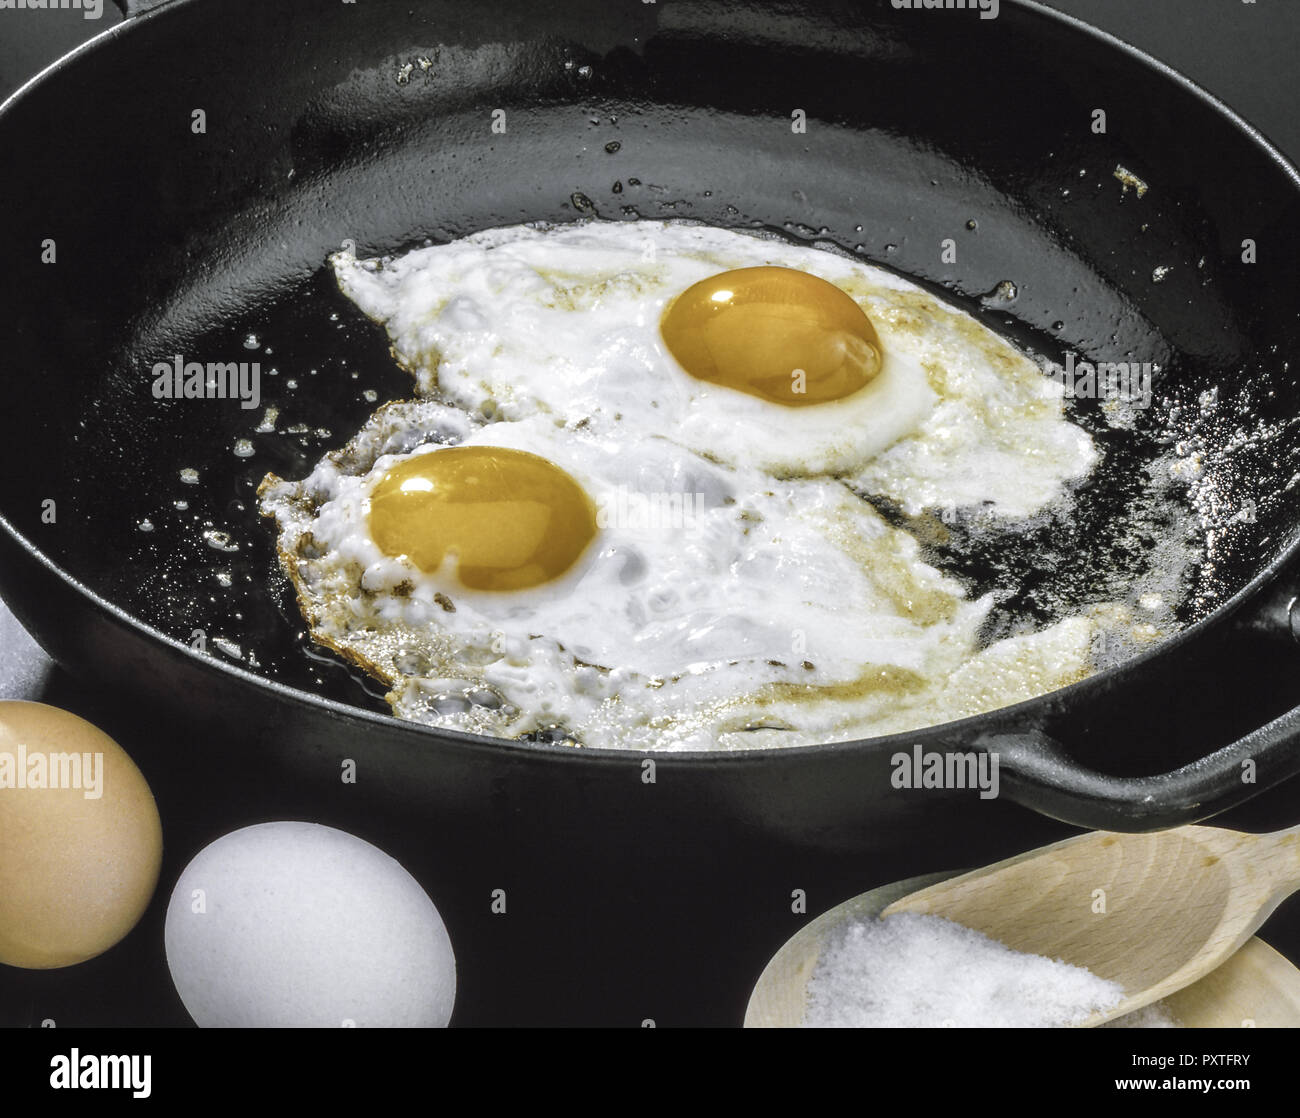 Spiegeleier werden in einer Pfanne gebraten, Fried eggs are fried in a pan, Egg, Eggs, Fried Eggs, Roast, Roasted, Fried, Food, Nutrition, Cooking, Fr Stock Photo